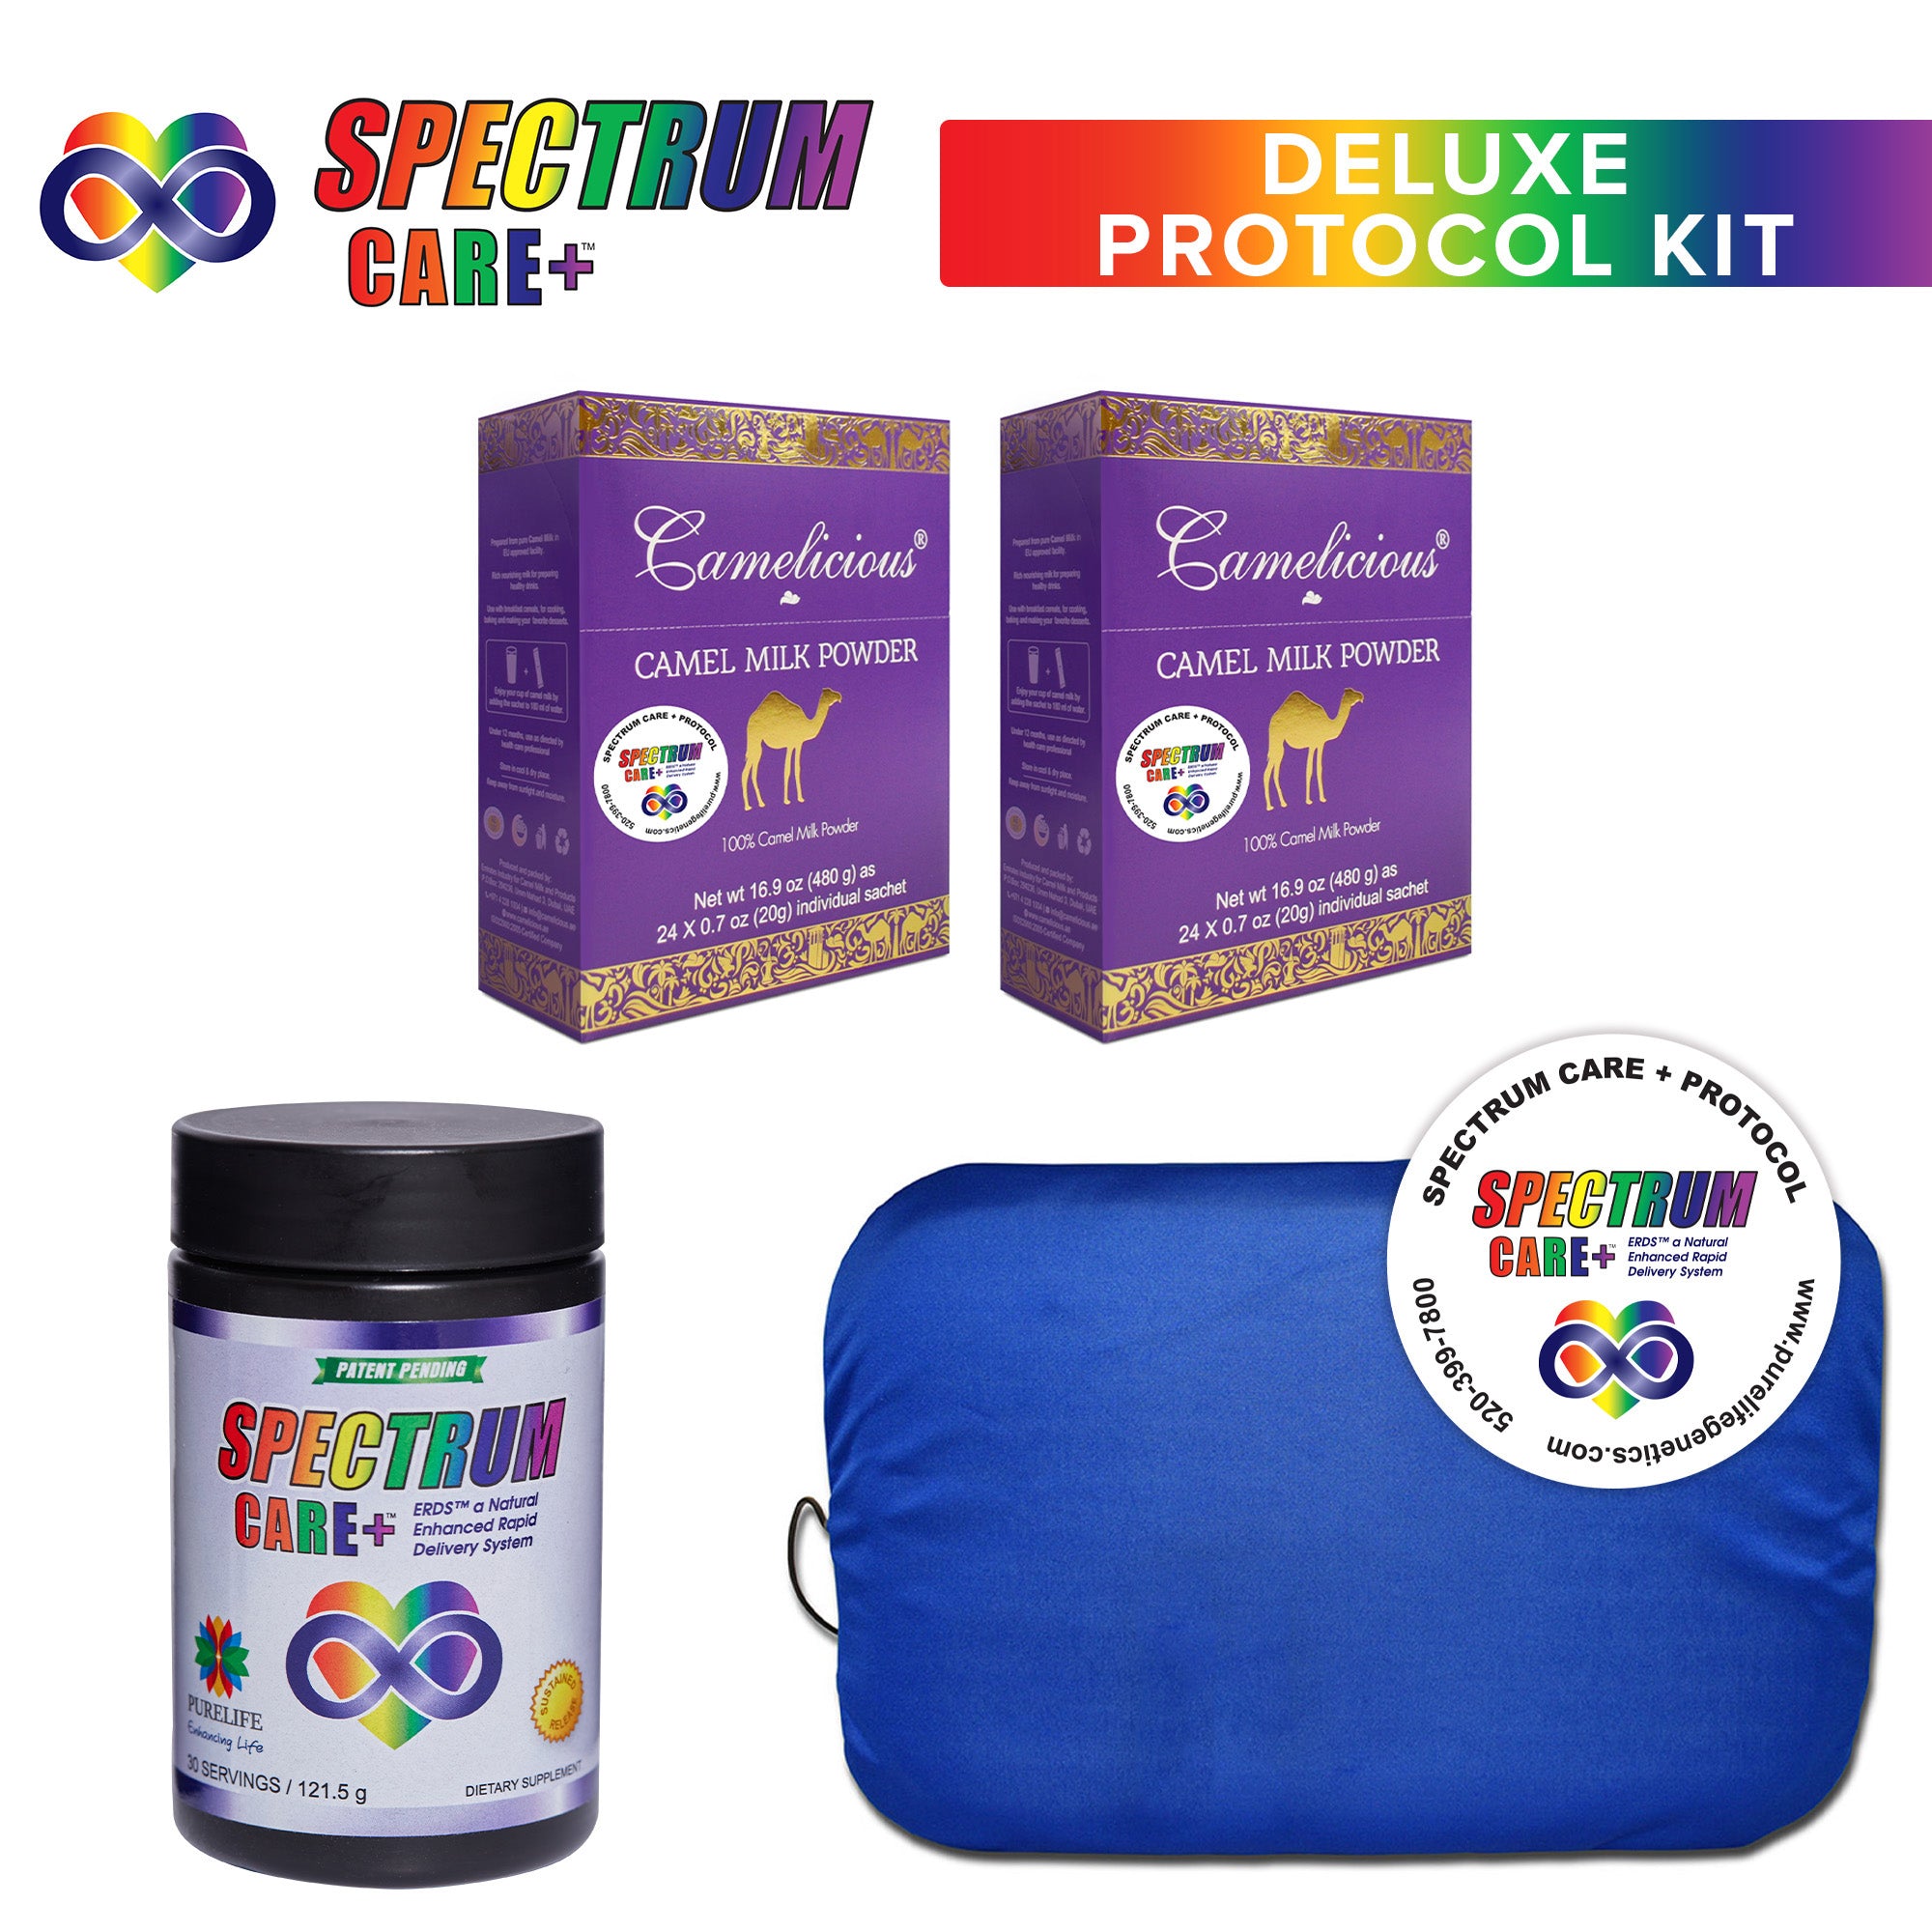 Spectrum Care+ Deluxe Protocol Kit